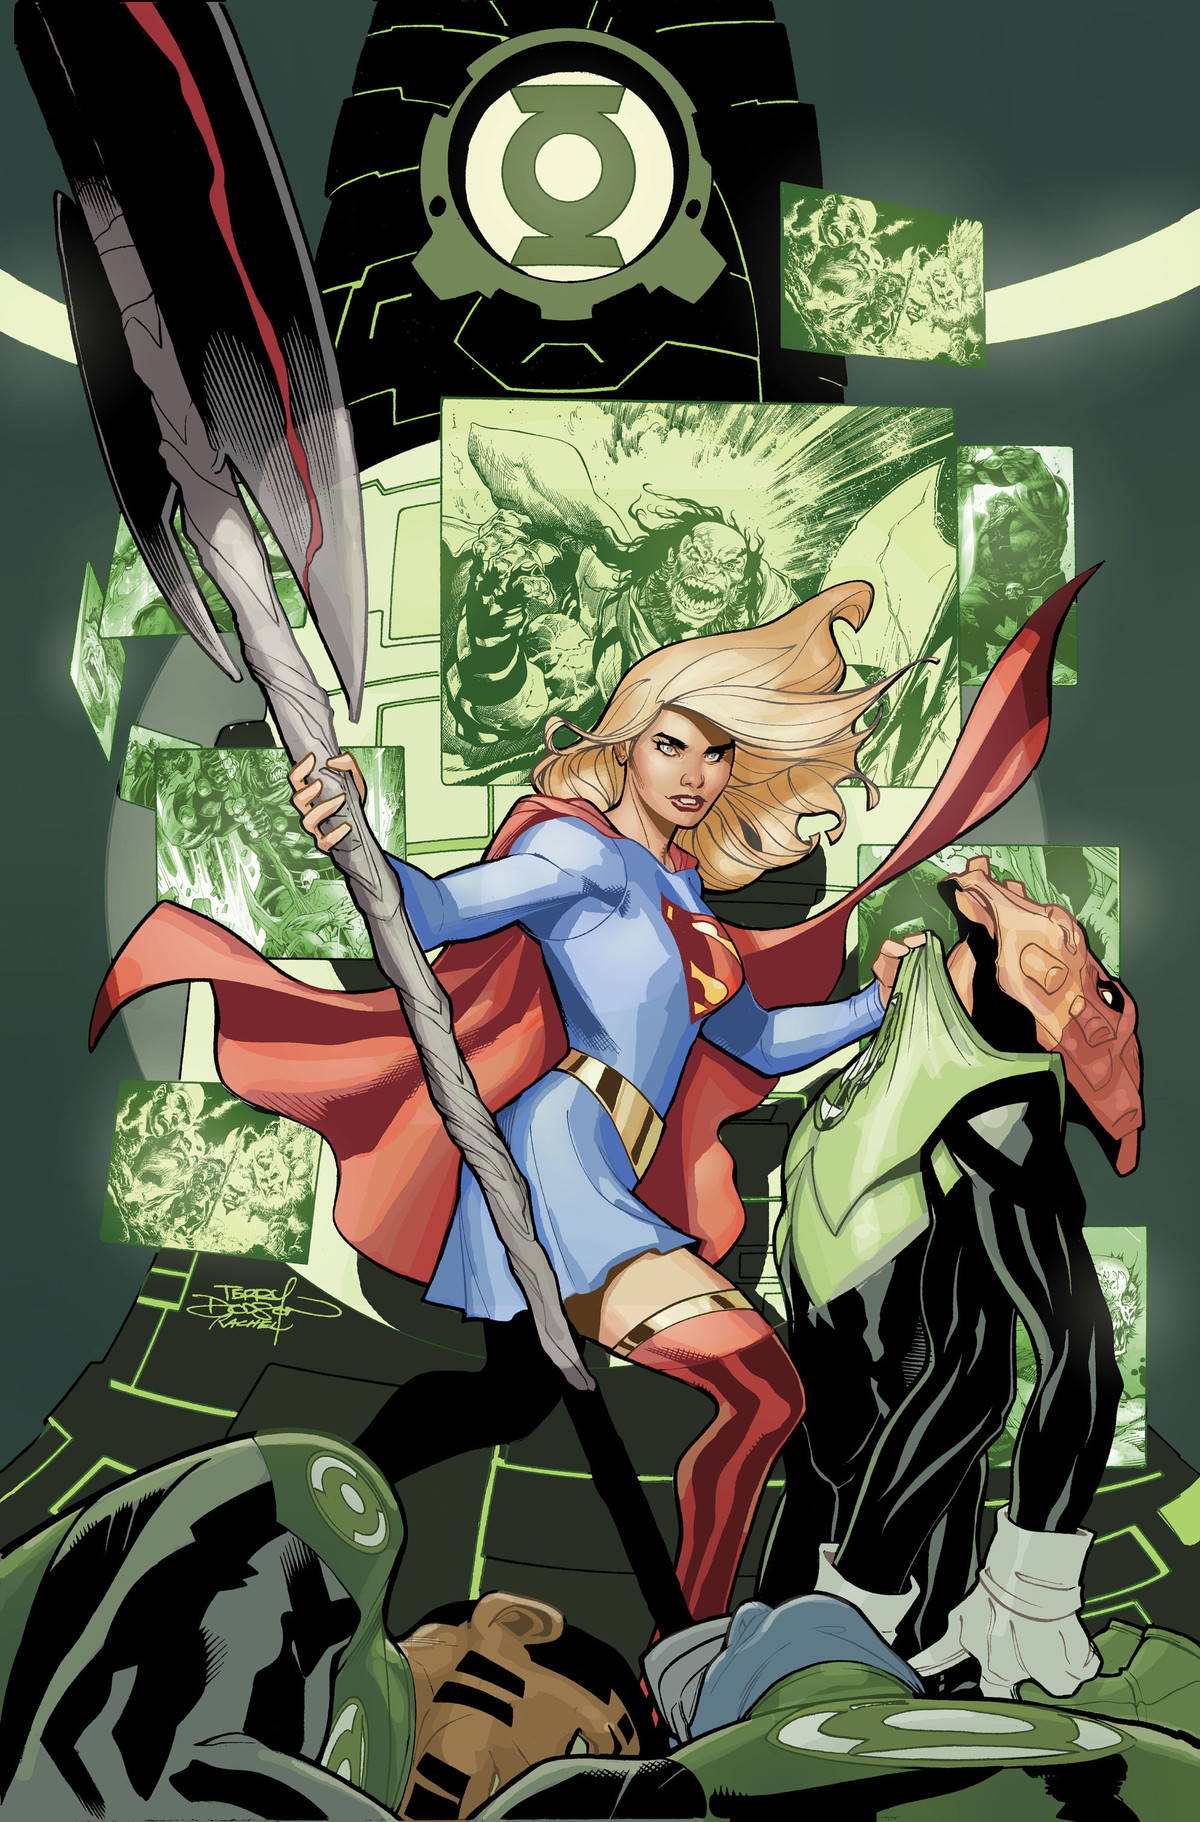 Supergirl #22 - couverture variante par Terry Dodson